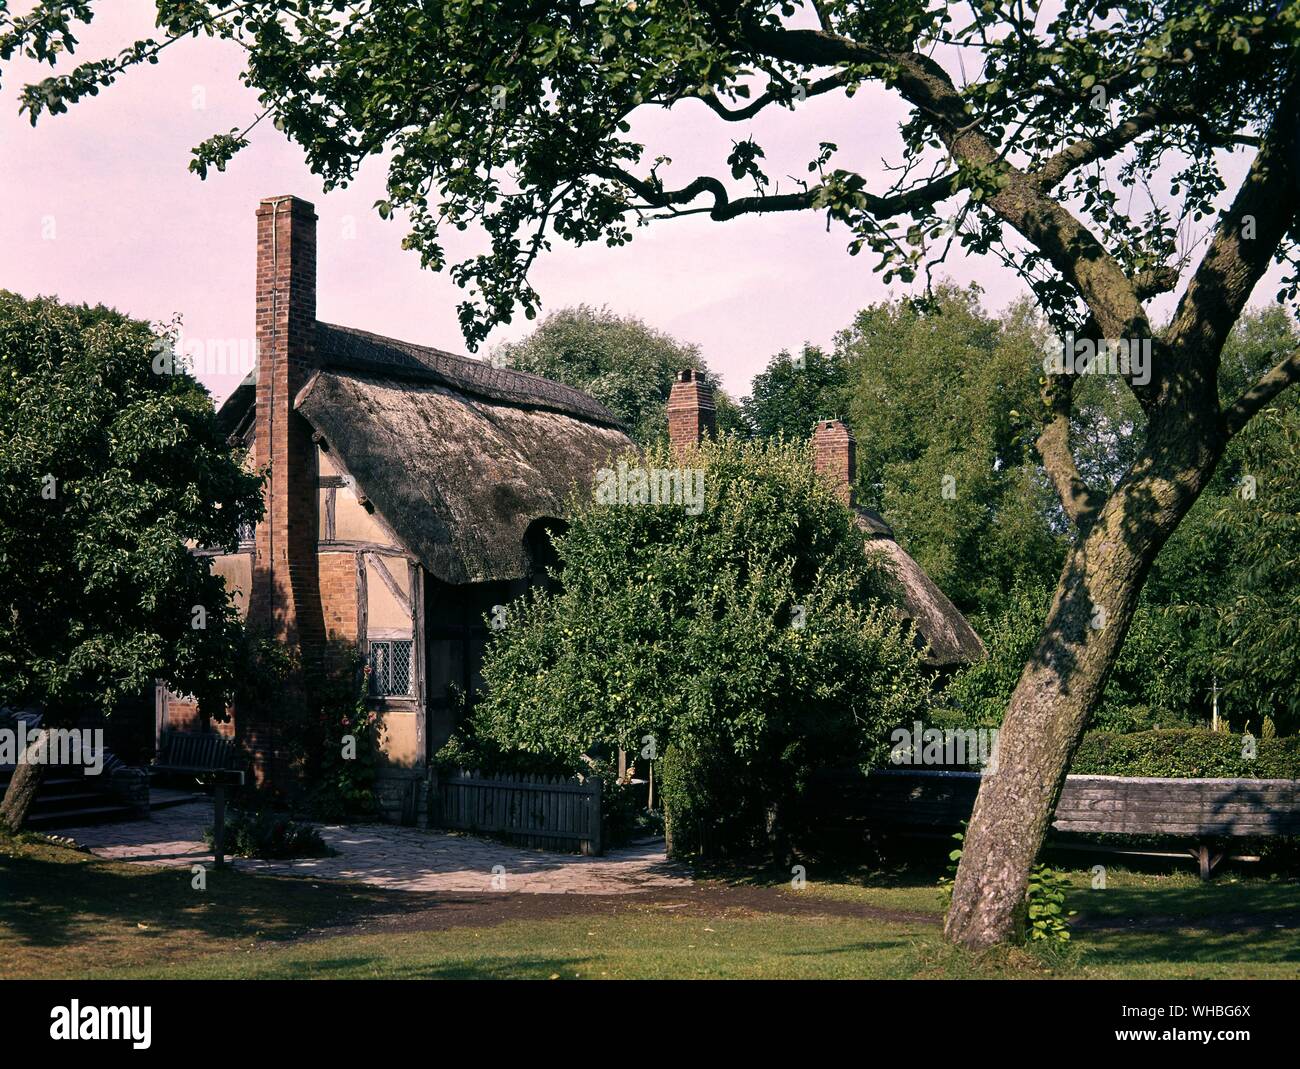 Ann Hathaway's Cottage - William Shakespeare se casó con Anne Hathaway en 1582, en su casa familiar fue en el caserío de Shottery apenas una milla del centro de Stratford-upon-Avon. Anne era la hija de un granjero yeoman que murió en 1581, dejando a su hija £6 13s 4d en el día de su matrimonio. La descripción de la cabaña no hace justicia a la Hathaway home, que era en realidad una sustancial de doce habitaciones Cortijo isabelino, la parte inferior fue construida a comienzos de los 2940's y ampliado posteriormente en 1623. La casa permaneció en el Hathaway Family hasta 1892, cuando fue comprado Foto de stock